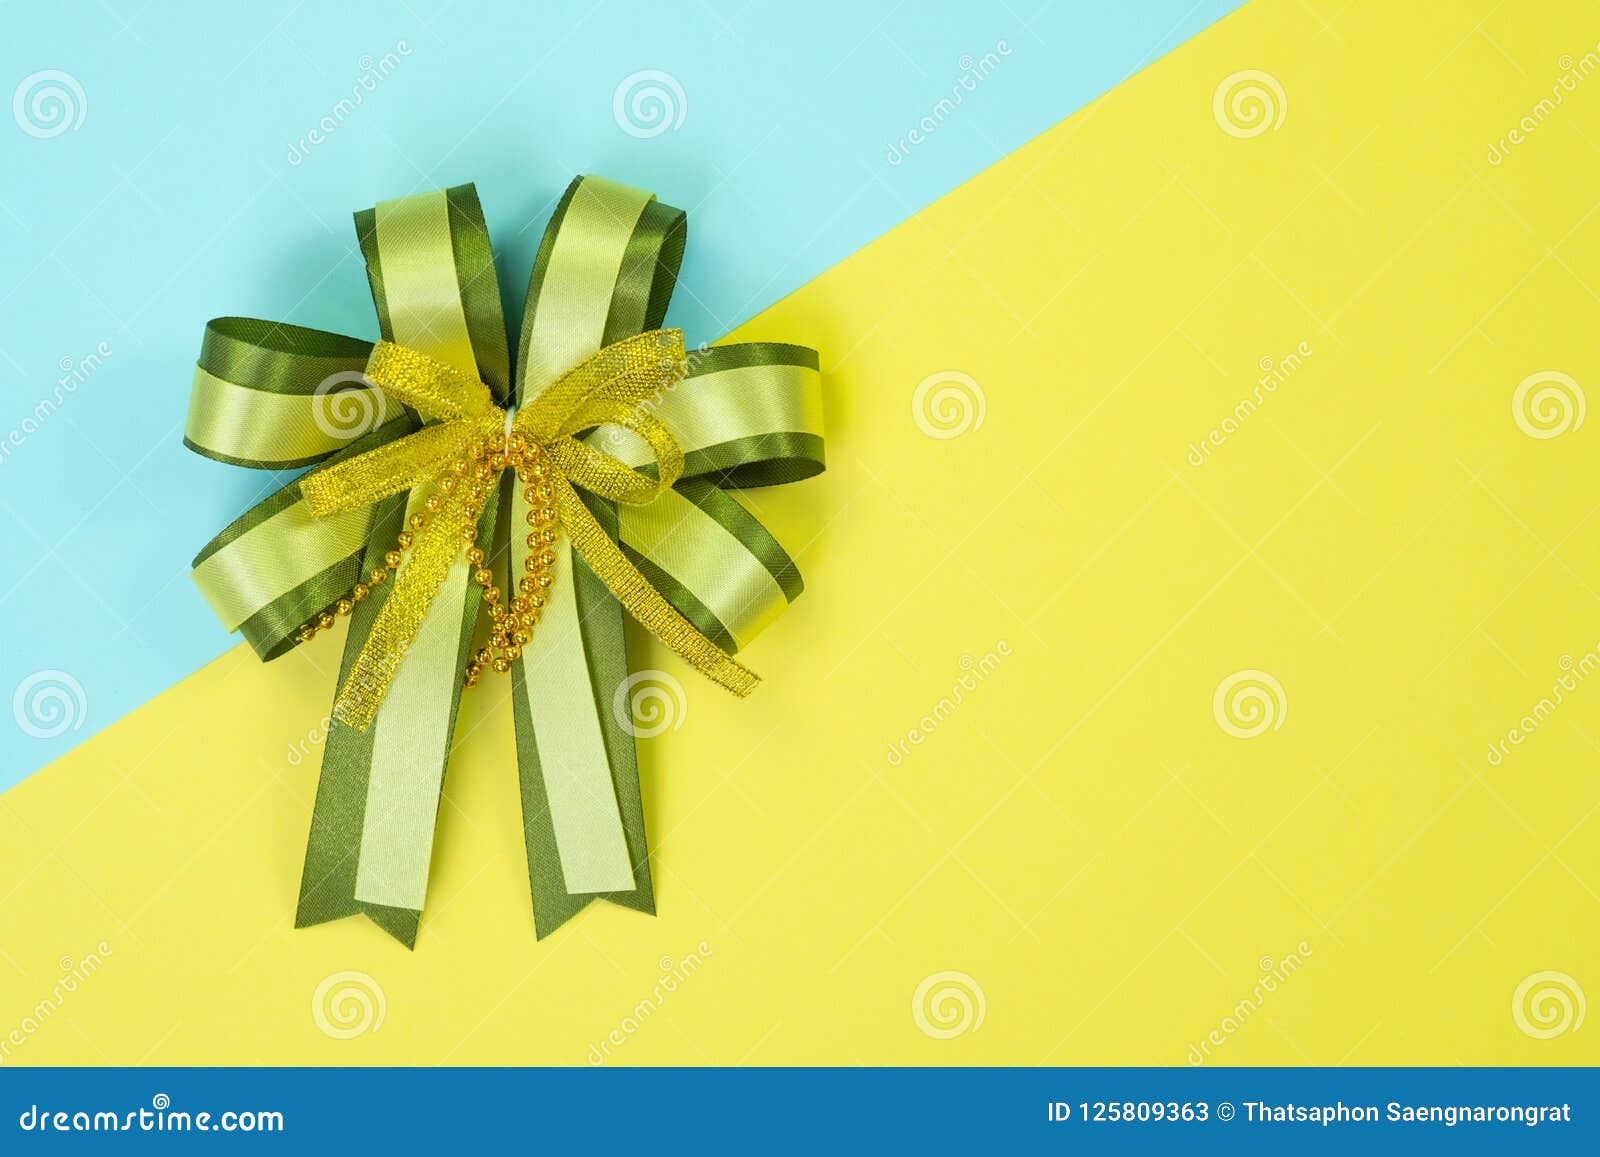 绿色丝带 库存图片. 图片 包括有 丝带, 背包, 典雅, 当事人, 生日, 庆祝, 空白, 存在, 装饰 - 27935511